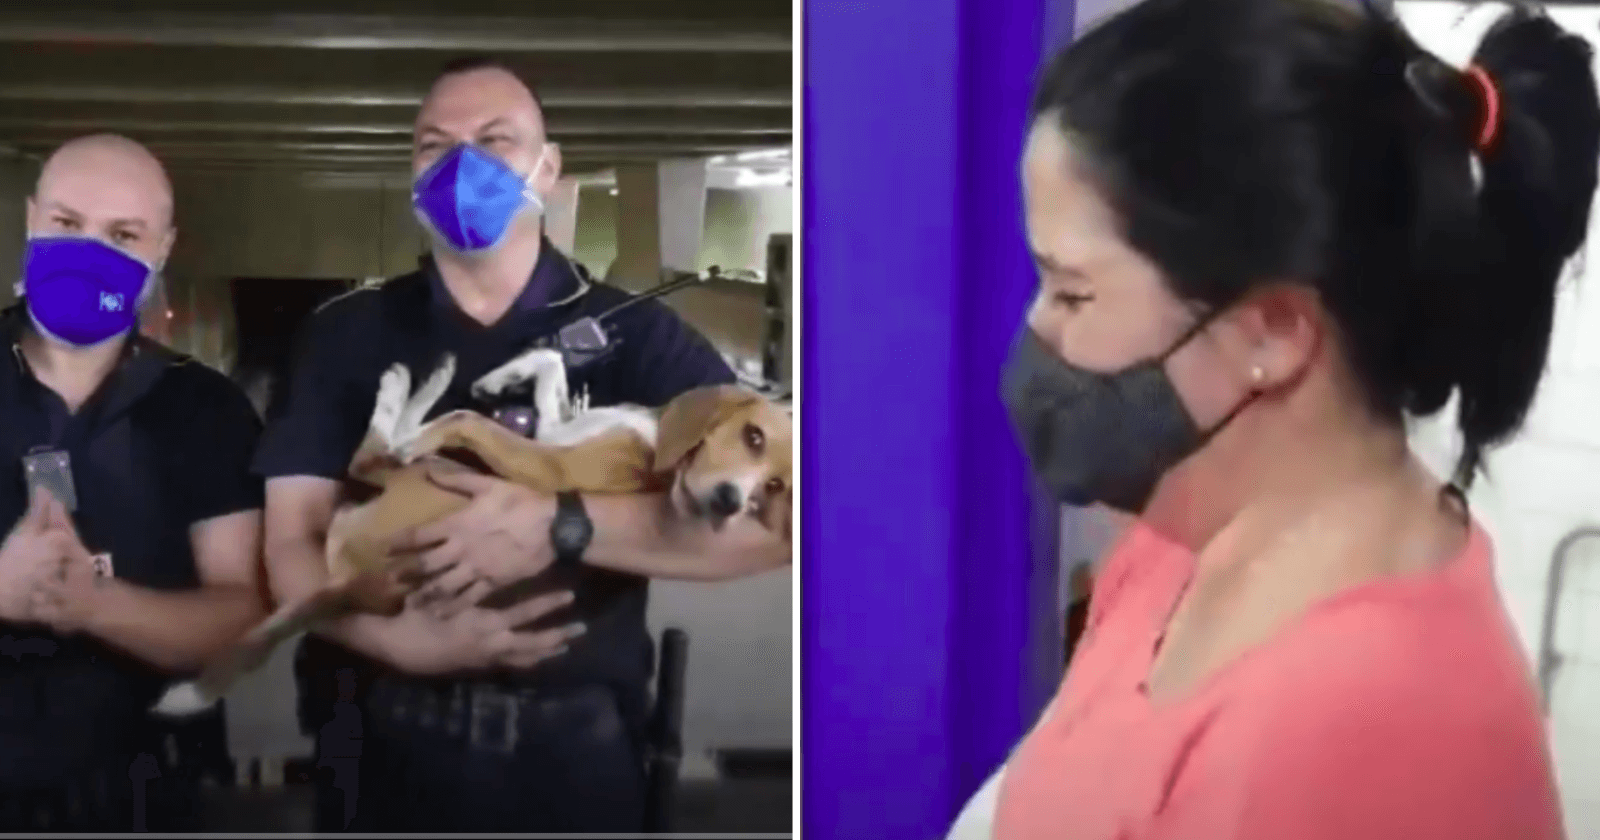 Funcionários param metrô, resgatam cachorrinha que estava desaparecida e a devolvem para dona